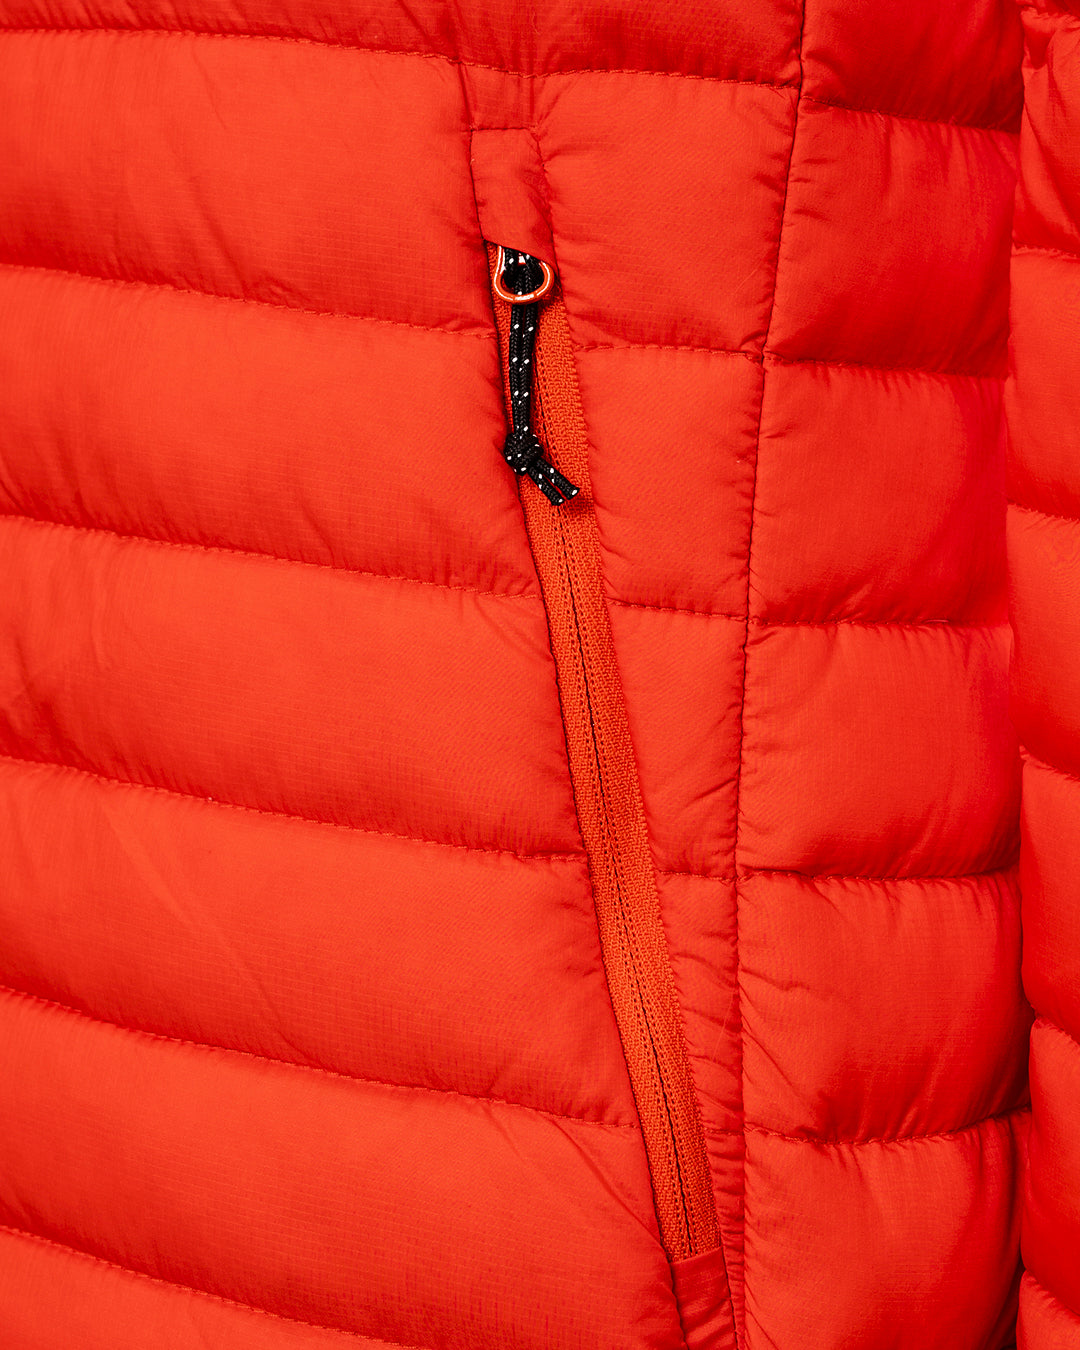 produktbillede af camino dunjakke i rød lomme med lynlås